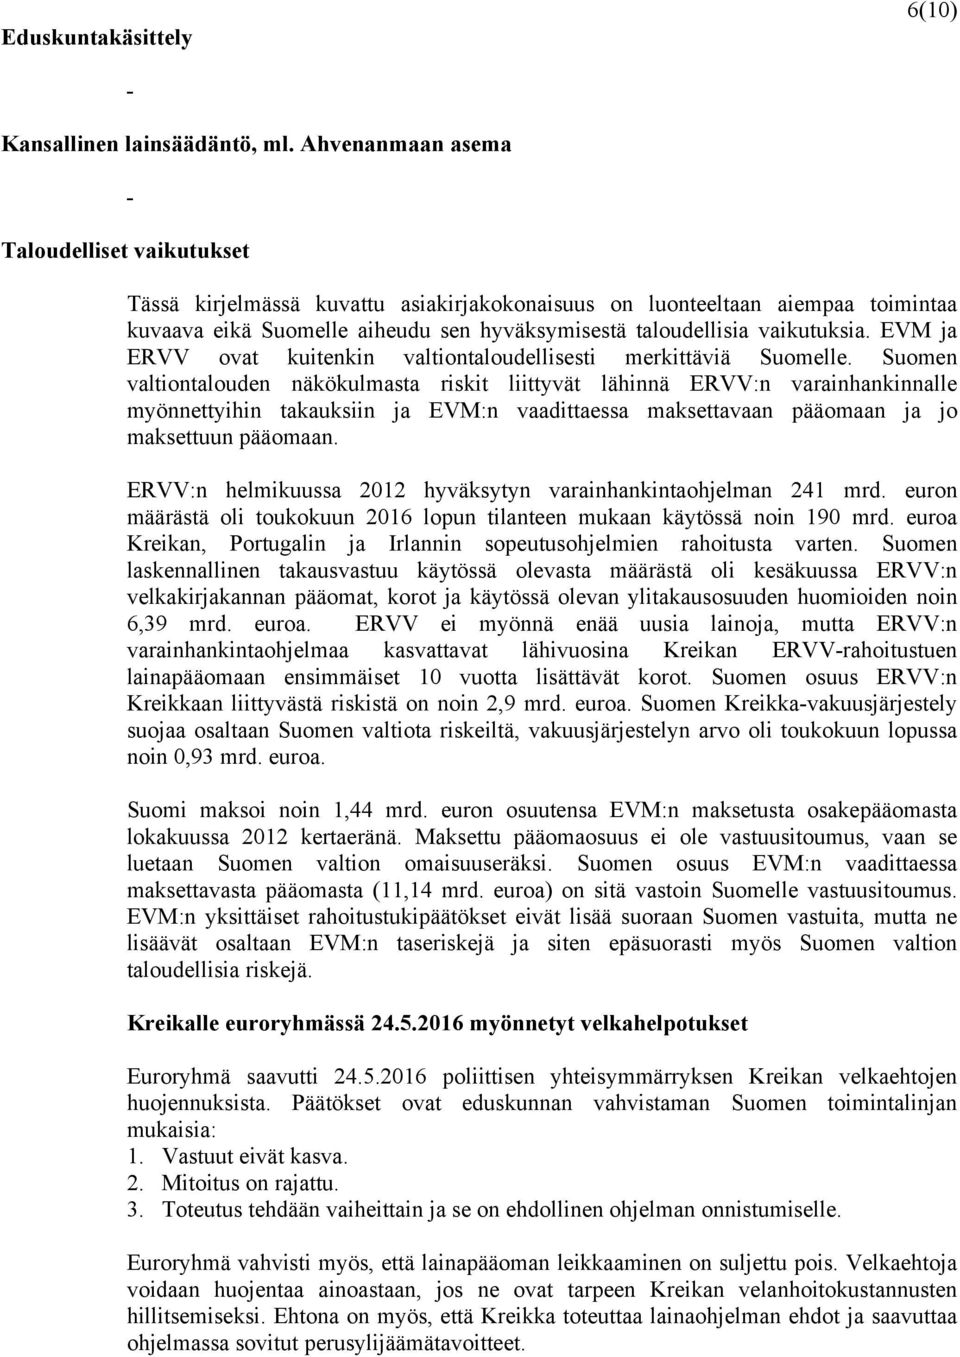 vaikutuksia. EVM ja ERVV ovat kuitenkin valtiontaloudellisesti merkittäviä Suomelle.